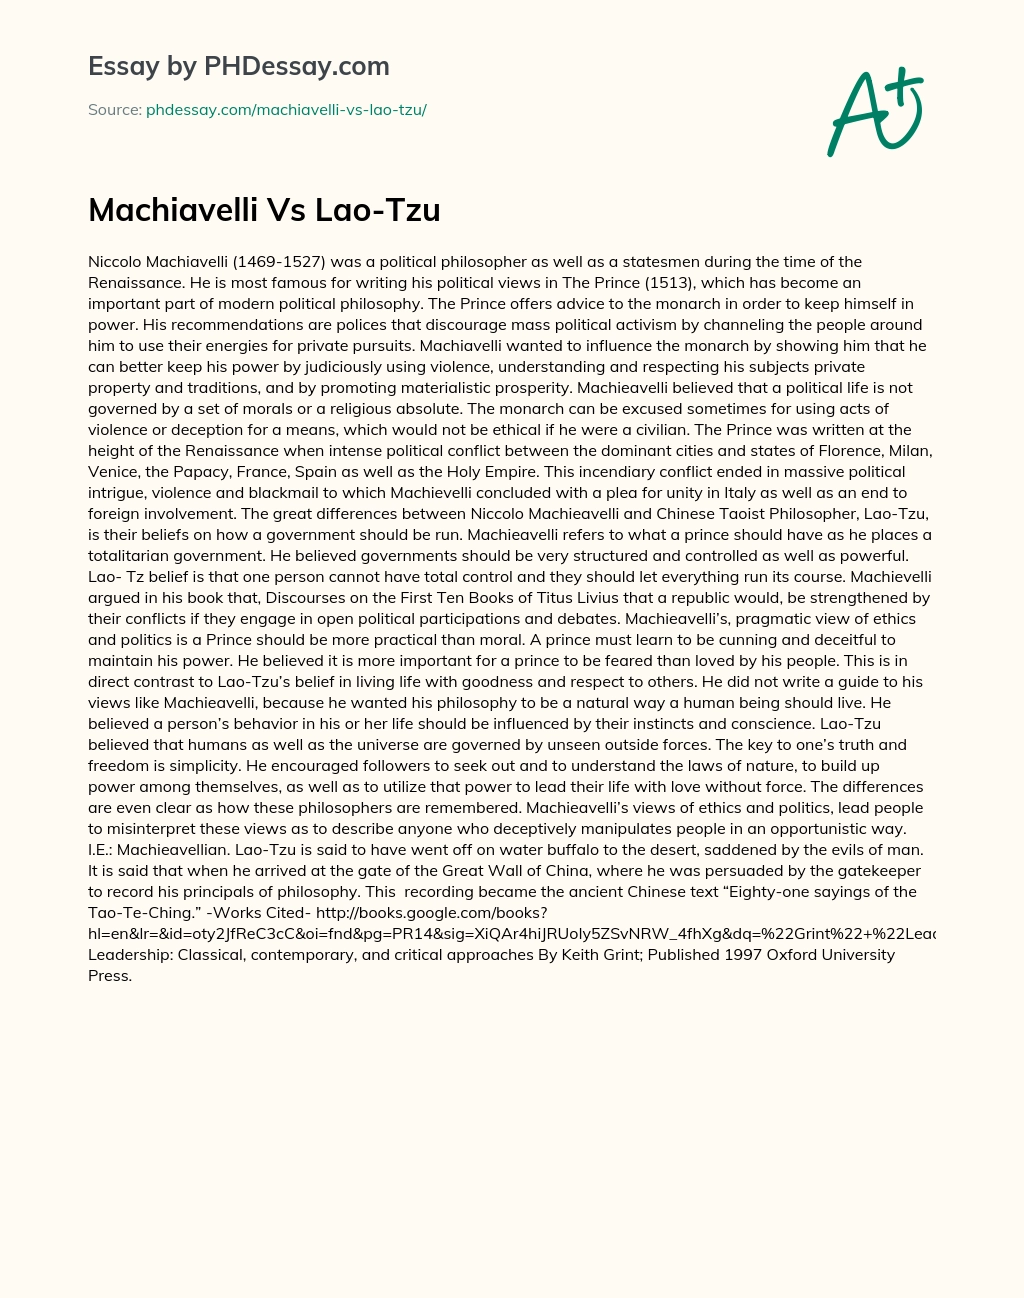 Machiavelli Vs Lao-Tzu essay